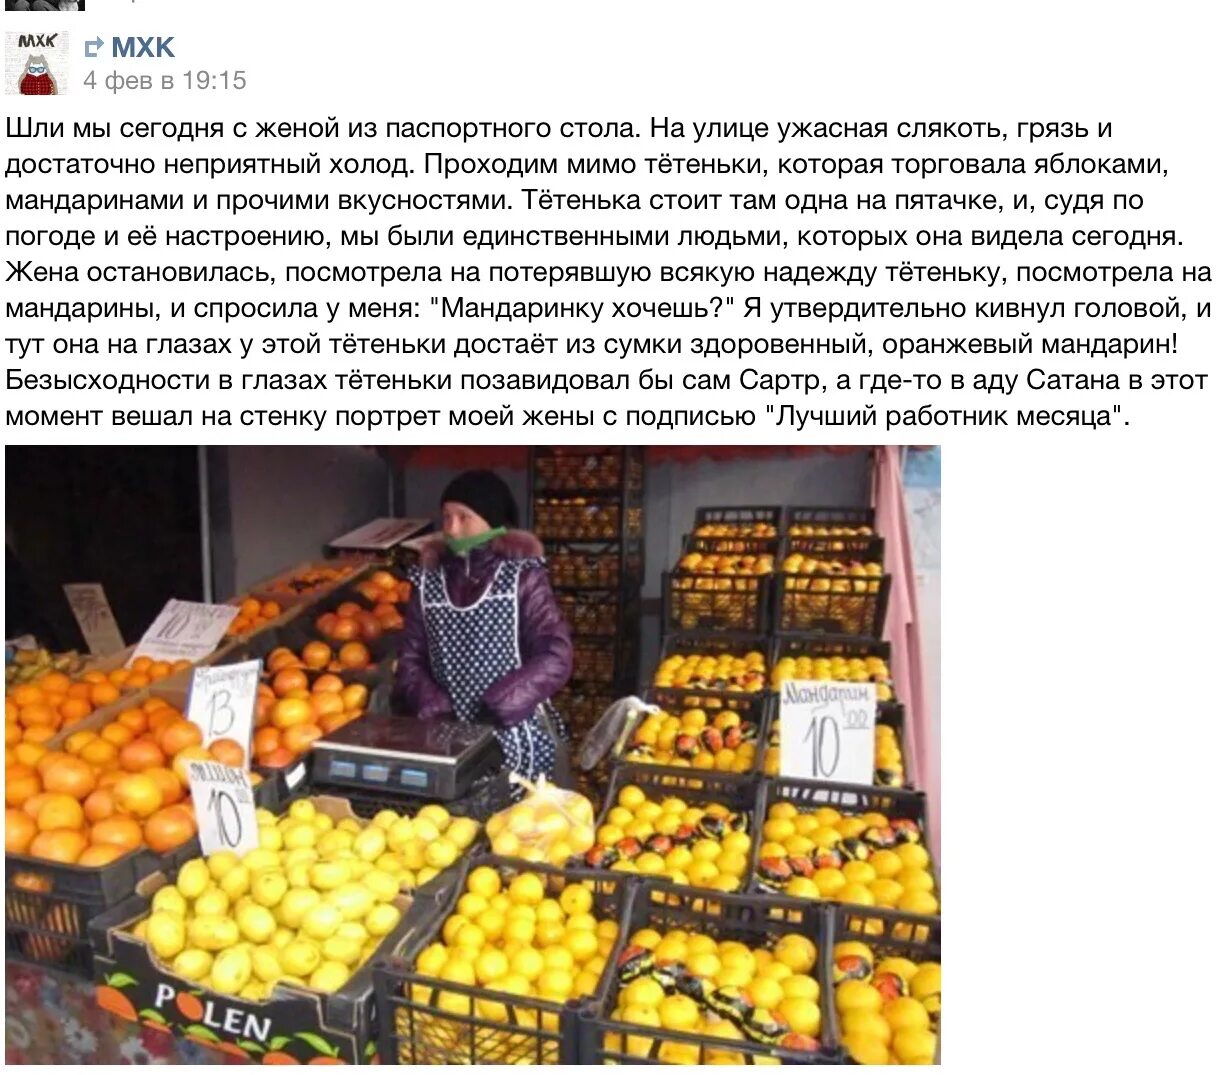 Продавщица мандаринов. Смешные фото "манда Ирины". Продавщица мандаринов в Хорватии. Торговец яблоками. Манда манда мандарин